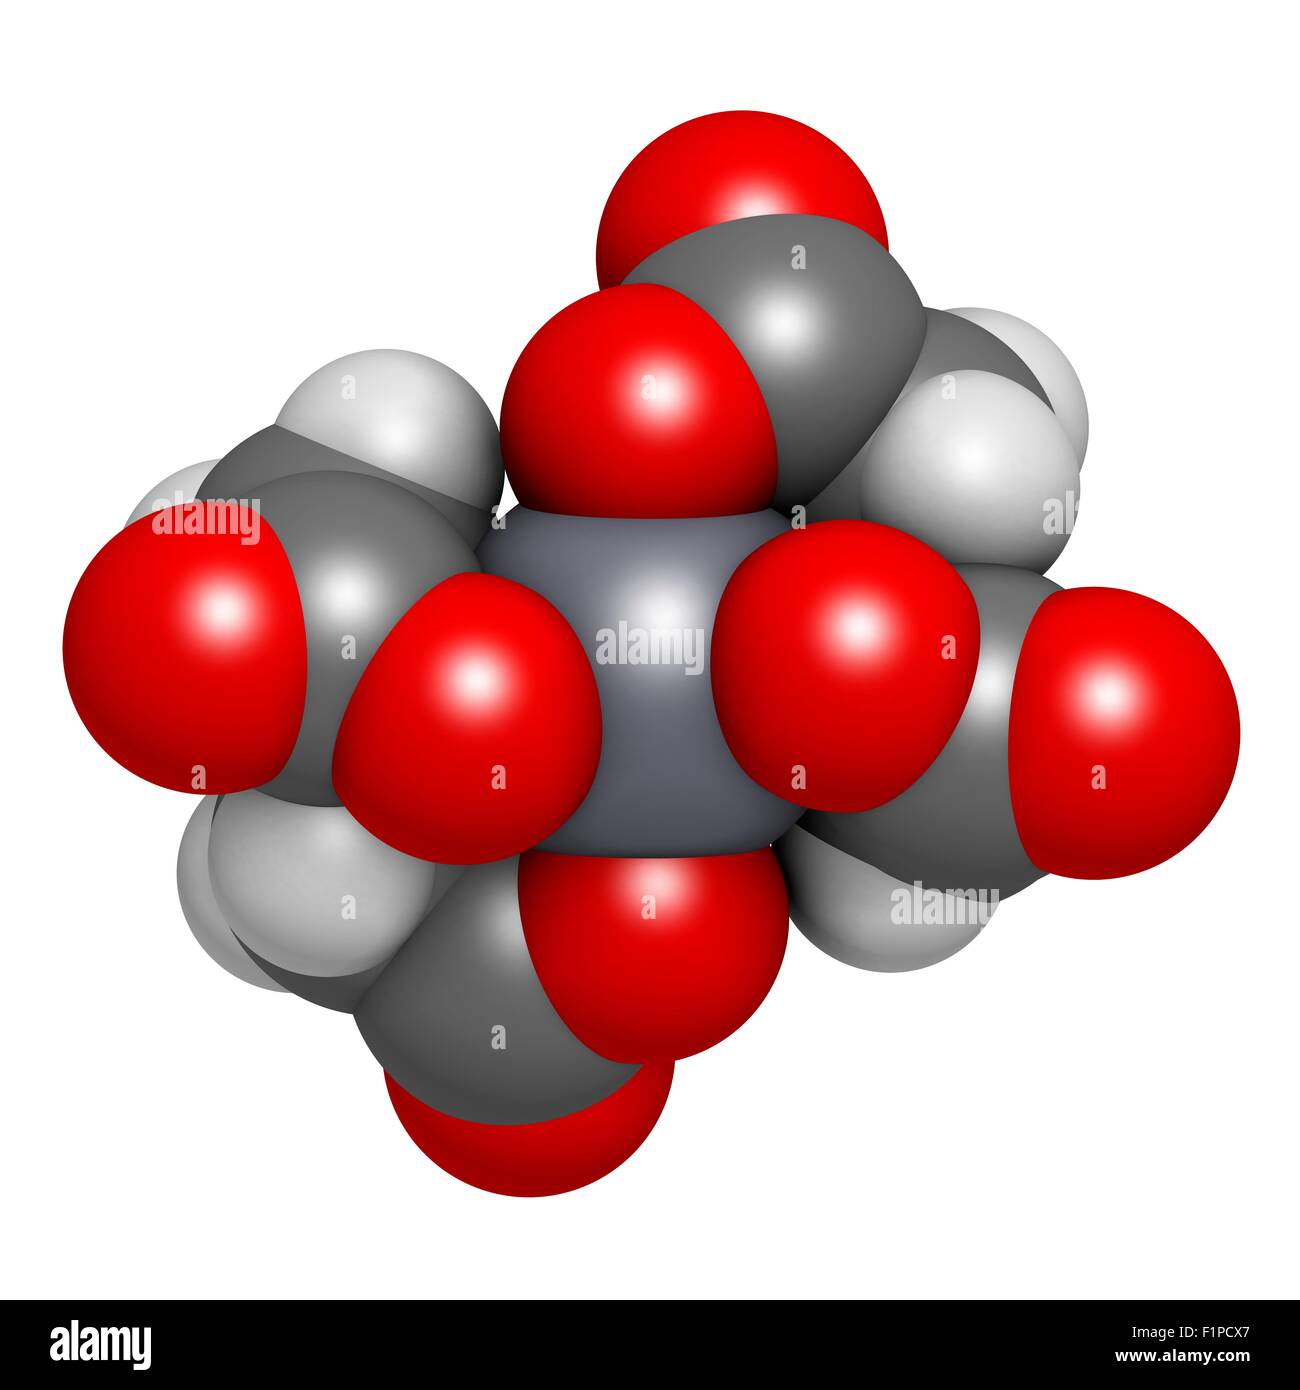 Calcium Le calcium édétate disodique (EDTA) molécule pharmaceutique médical dans le traitement par chélation pour traiter l'empoisonnement par les métaux (mercure plomb) Atomes Banque D'Images